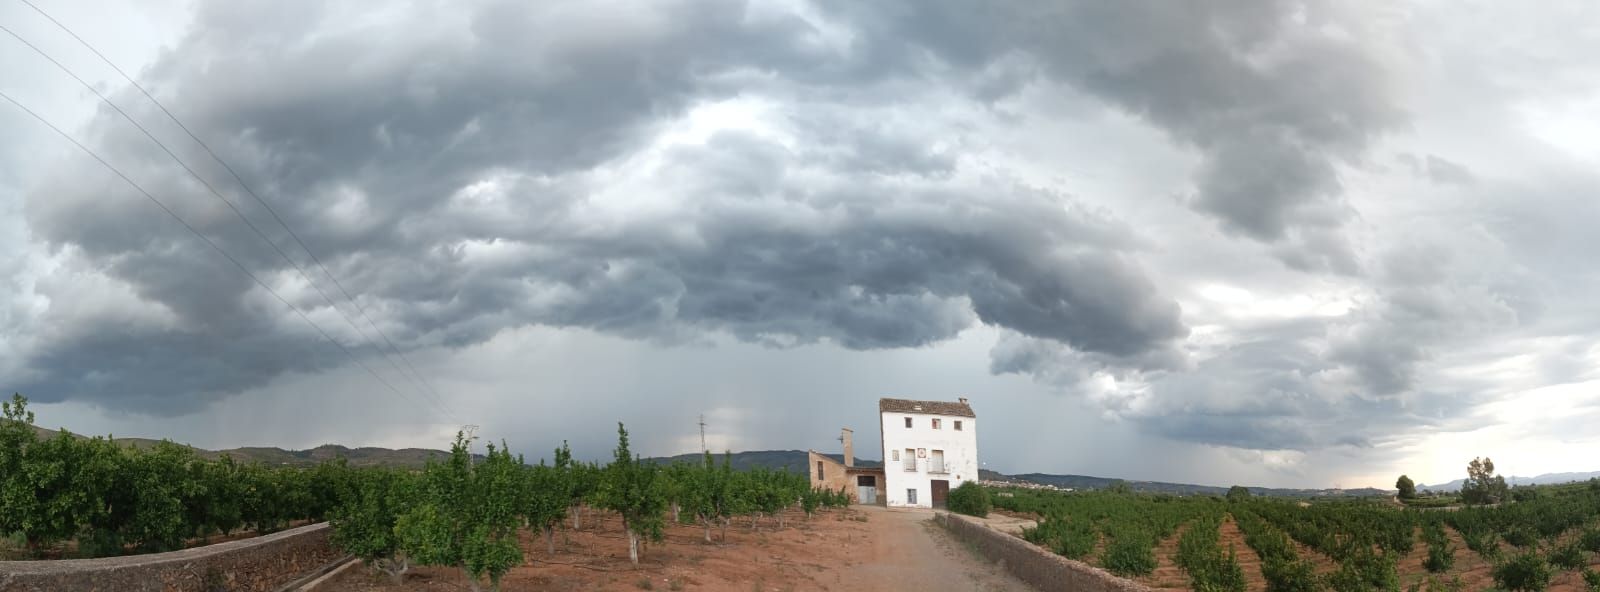 Las tormentas llegan a varios puntos de la C.Valenciana